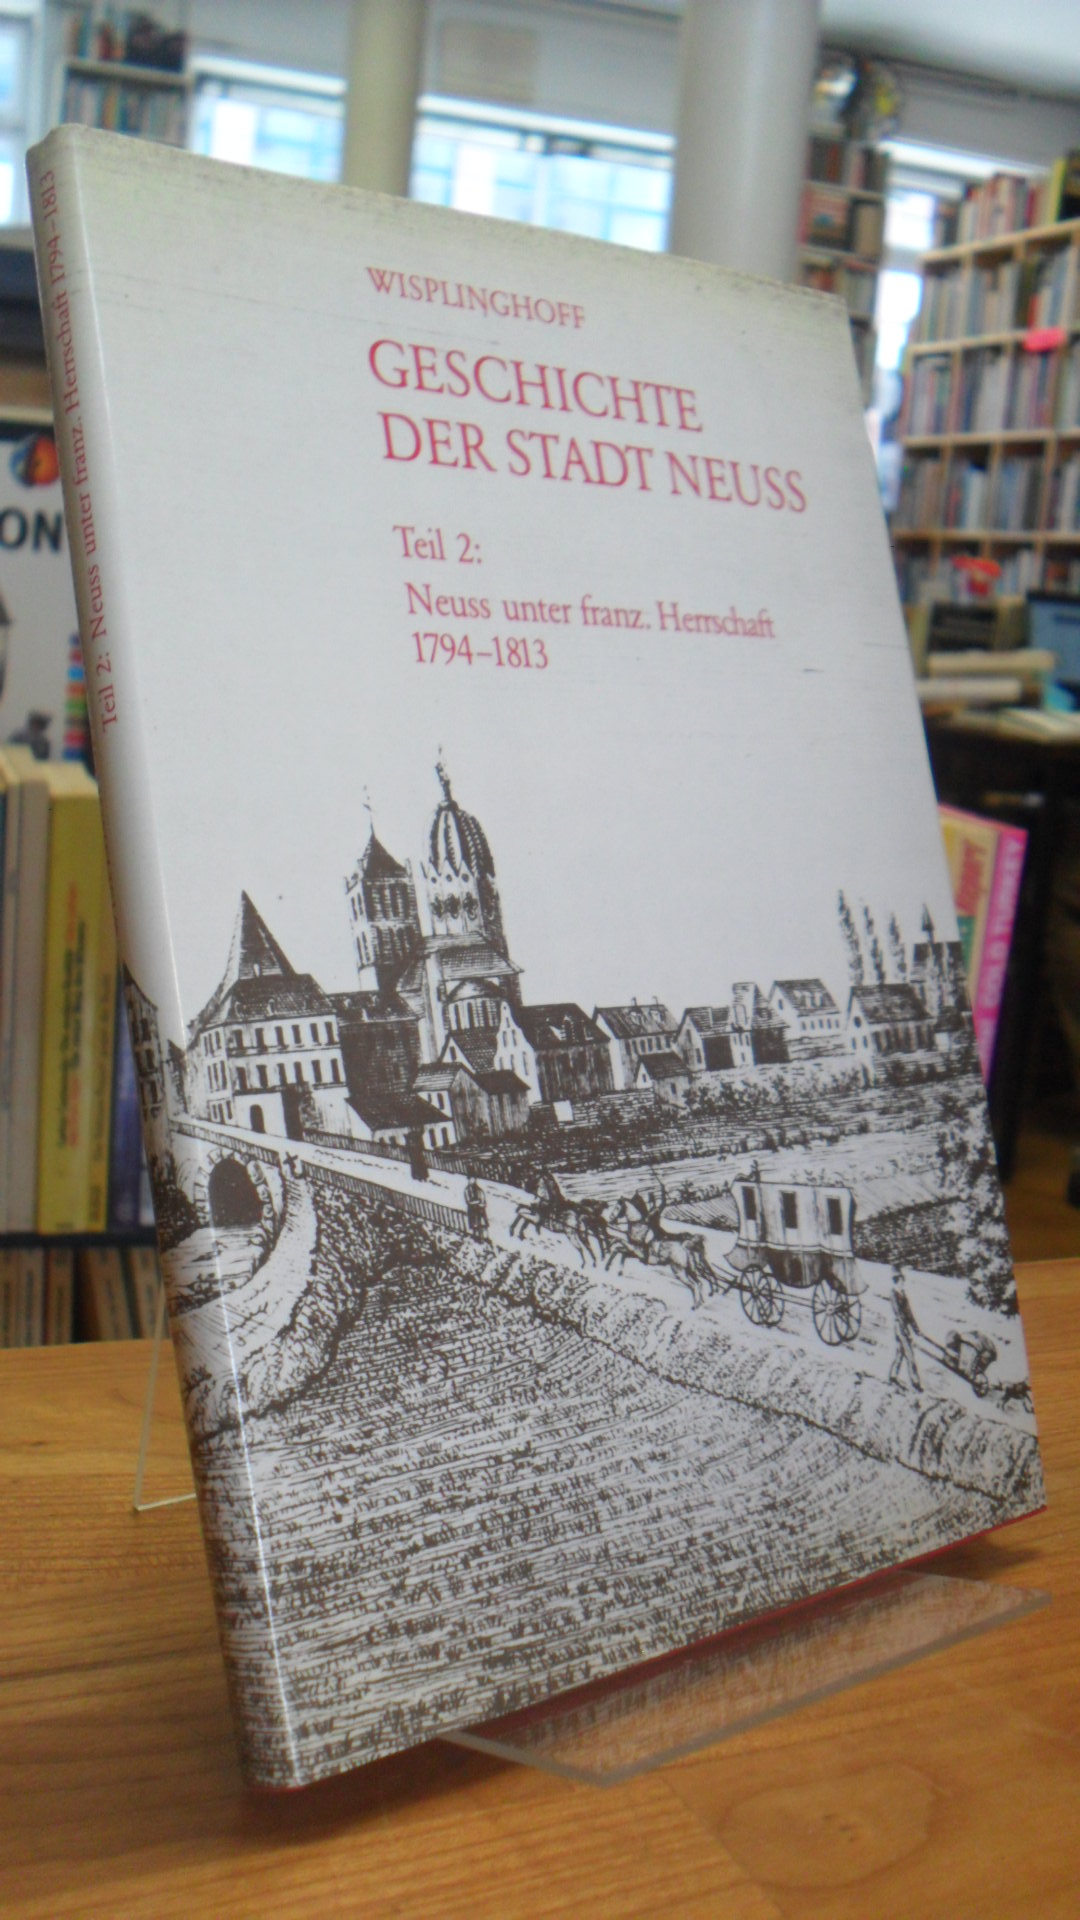 Neuss / Wisplinghoff, Geschichte der Stadt Neuss – Teil 2: Neuss unter französis